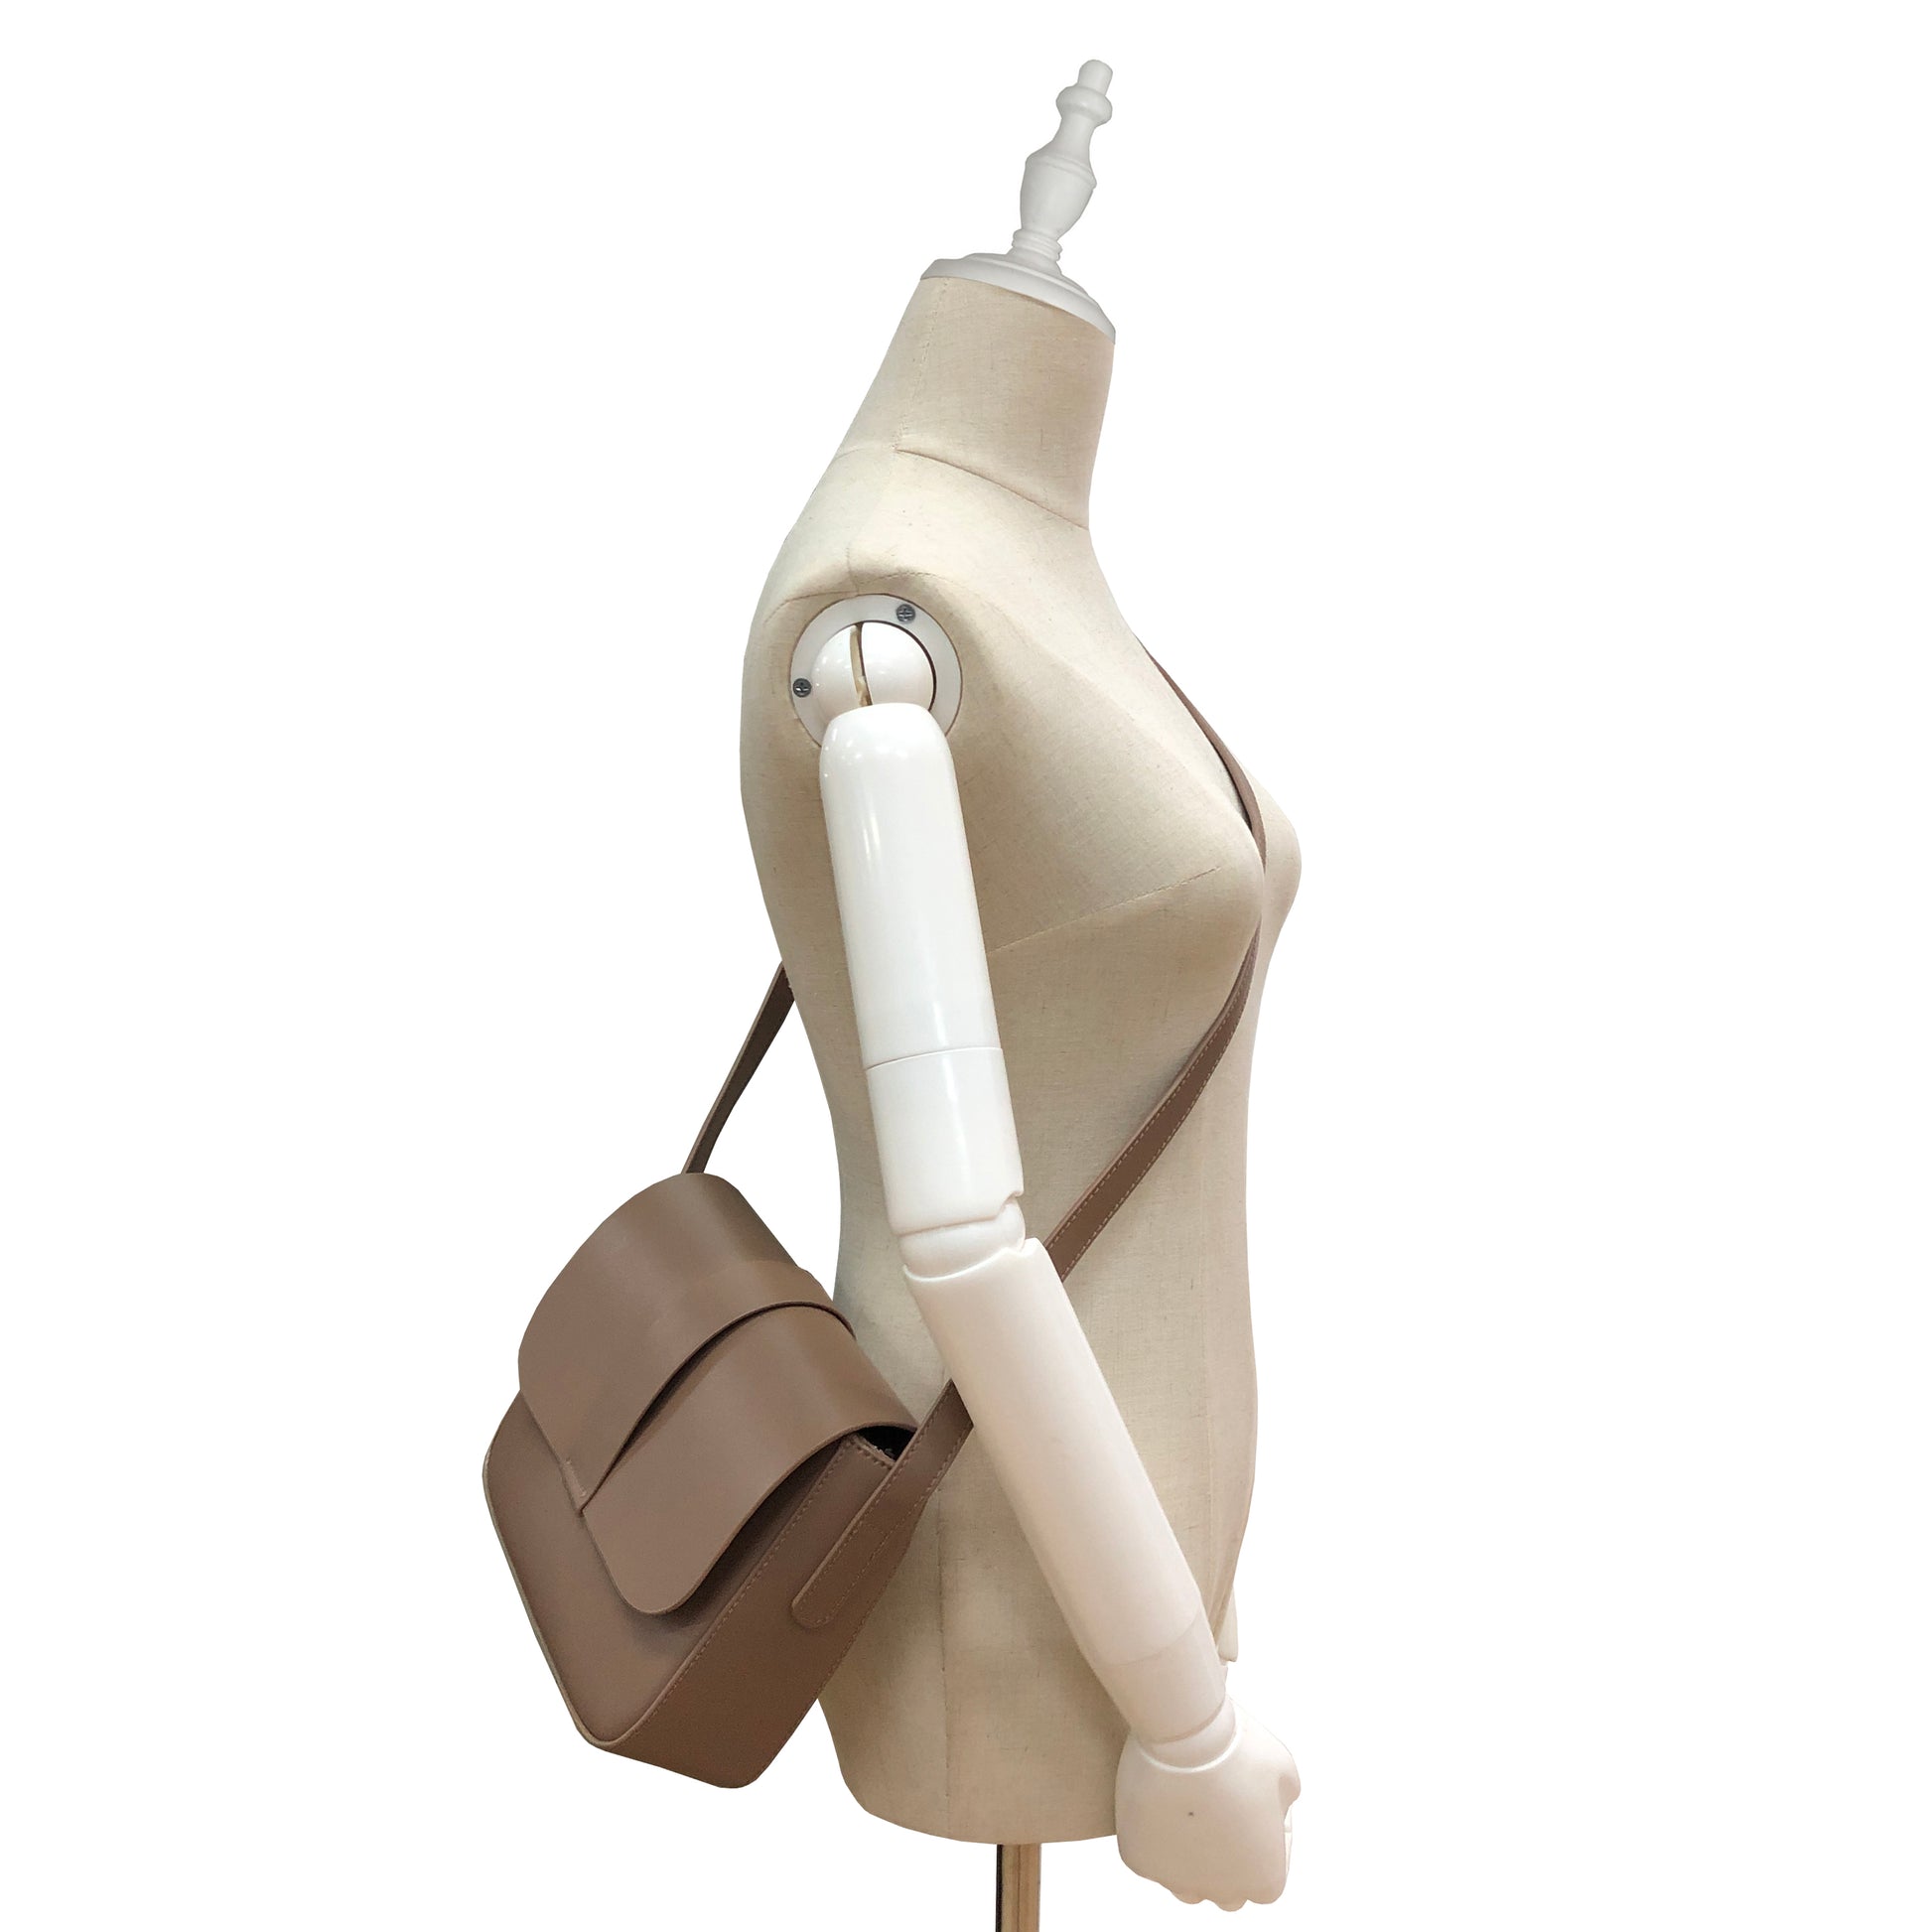 Women's genuine cowhide leather handbag Square V2 design by Tomorrow Closet